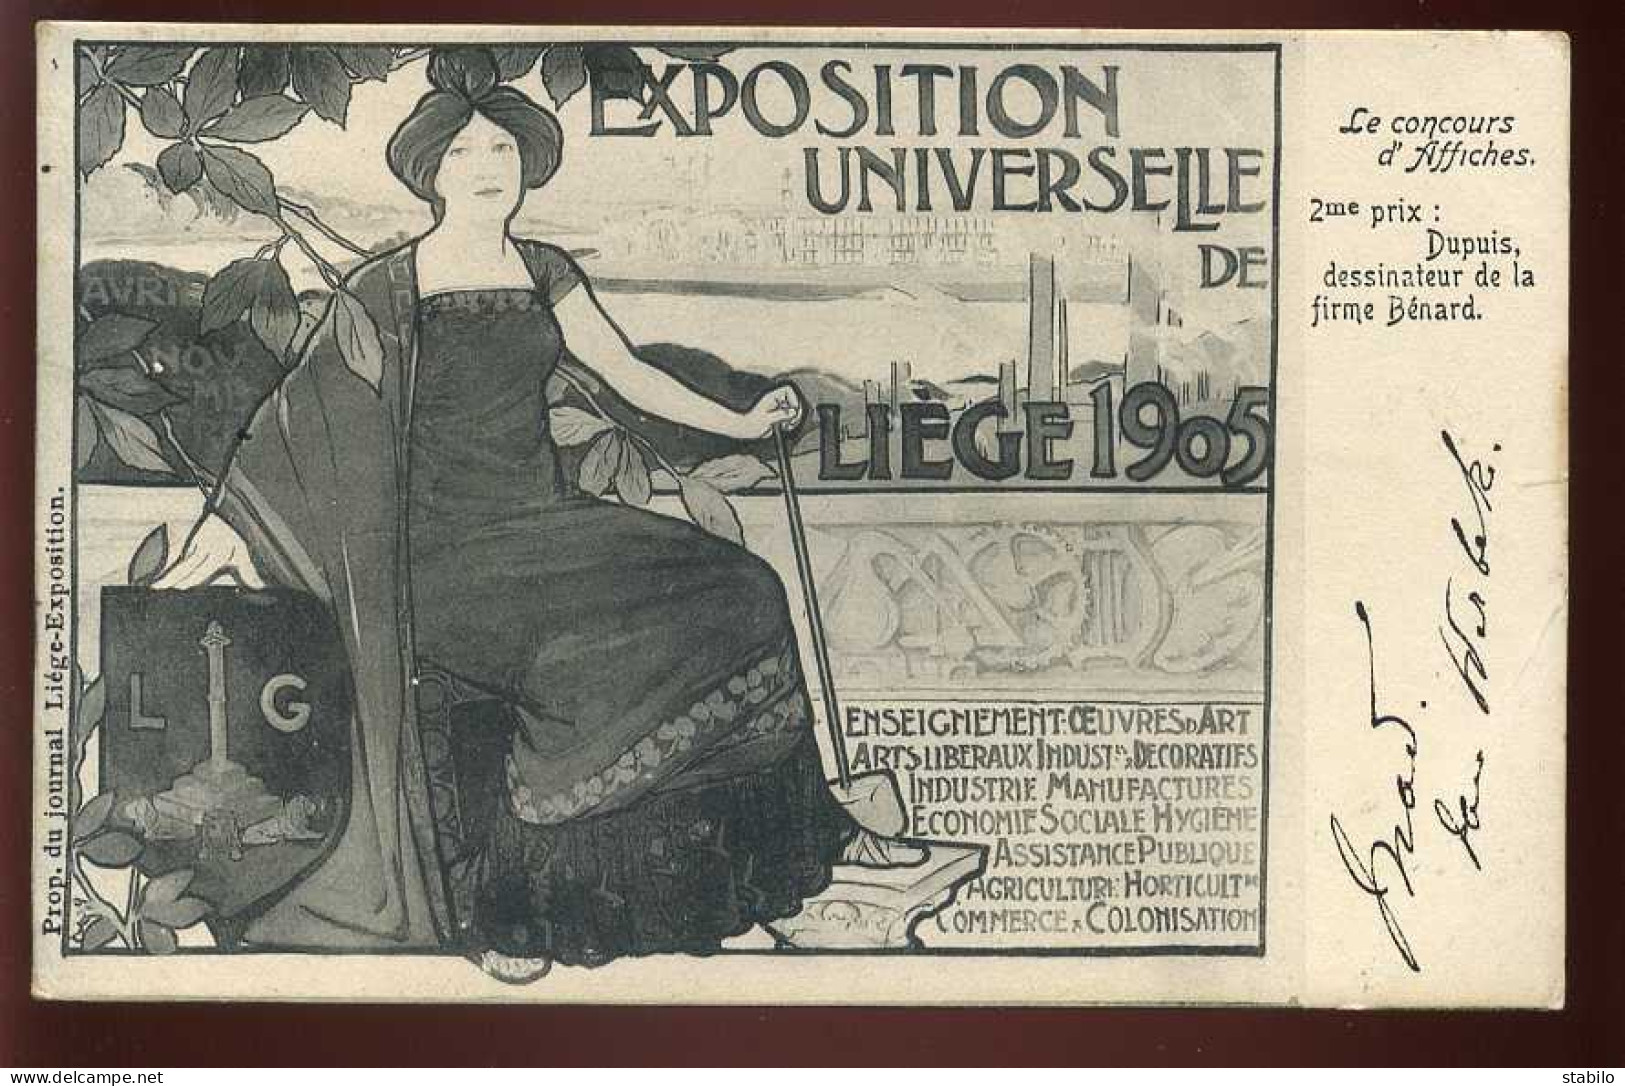 ILLUSTRATEUR DUPUIS - AFFICHE DE L'EXPOSITION UNIVERSELLE DE LIEGE 1905 - ART-NOUVEAU - Dupuis, Emile